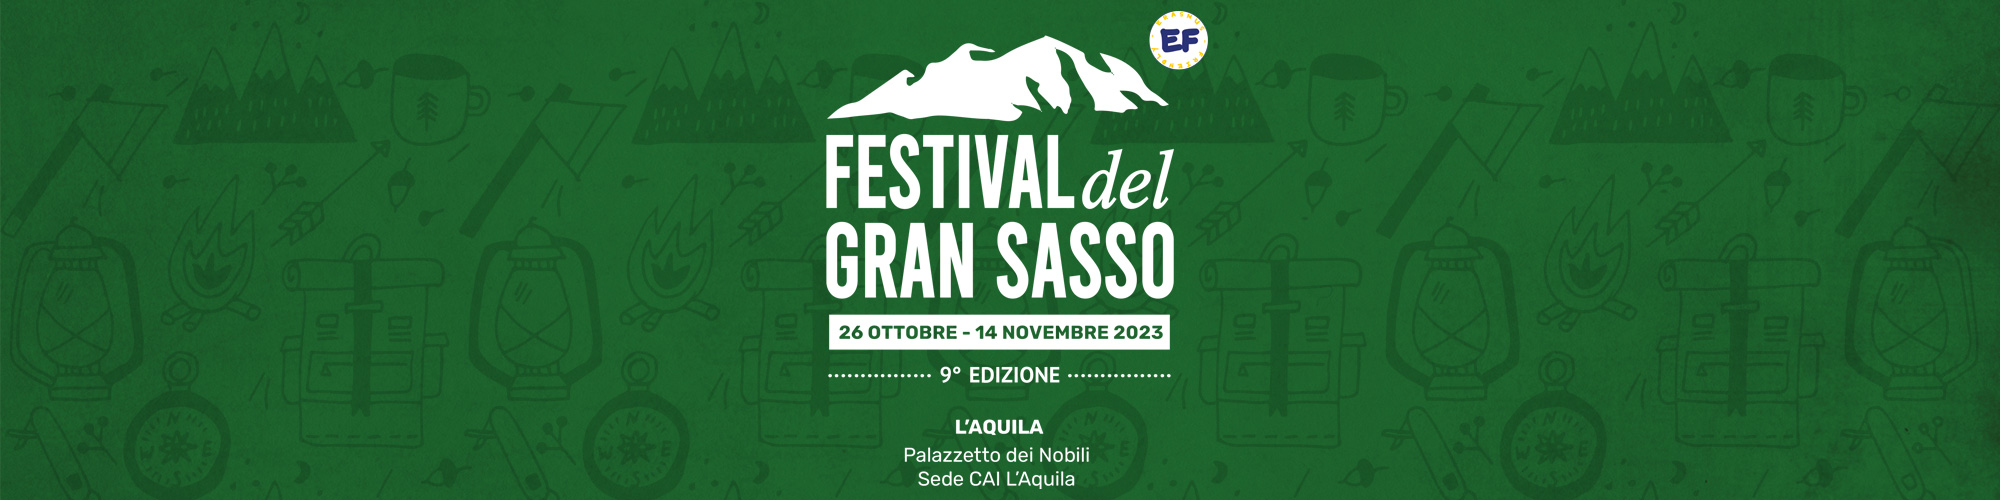 header-rassegna-festival-del-gran-sasso-2023